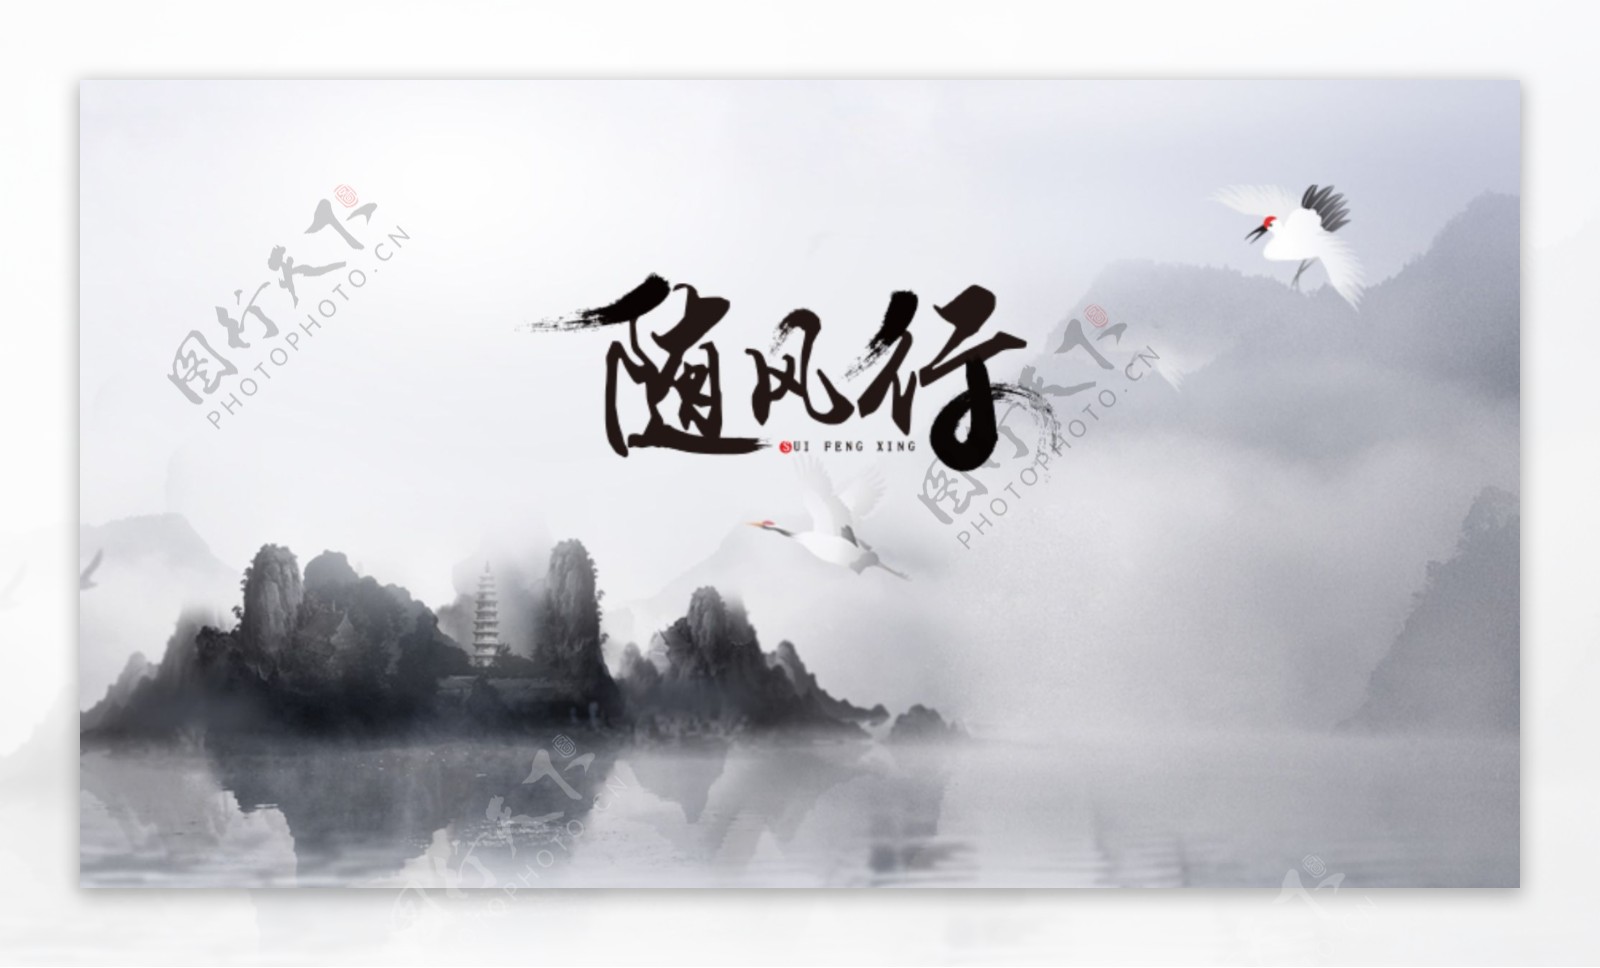 中国风随风行字体设计原创图案背景